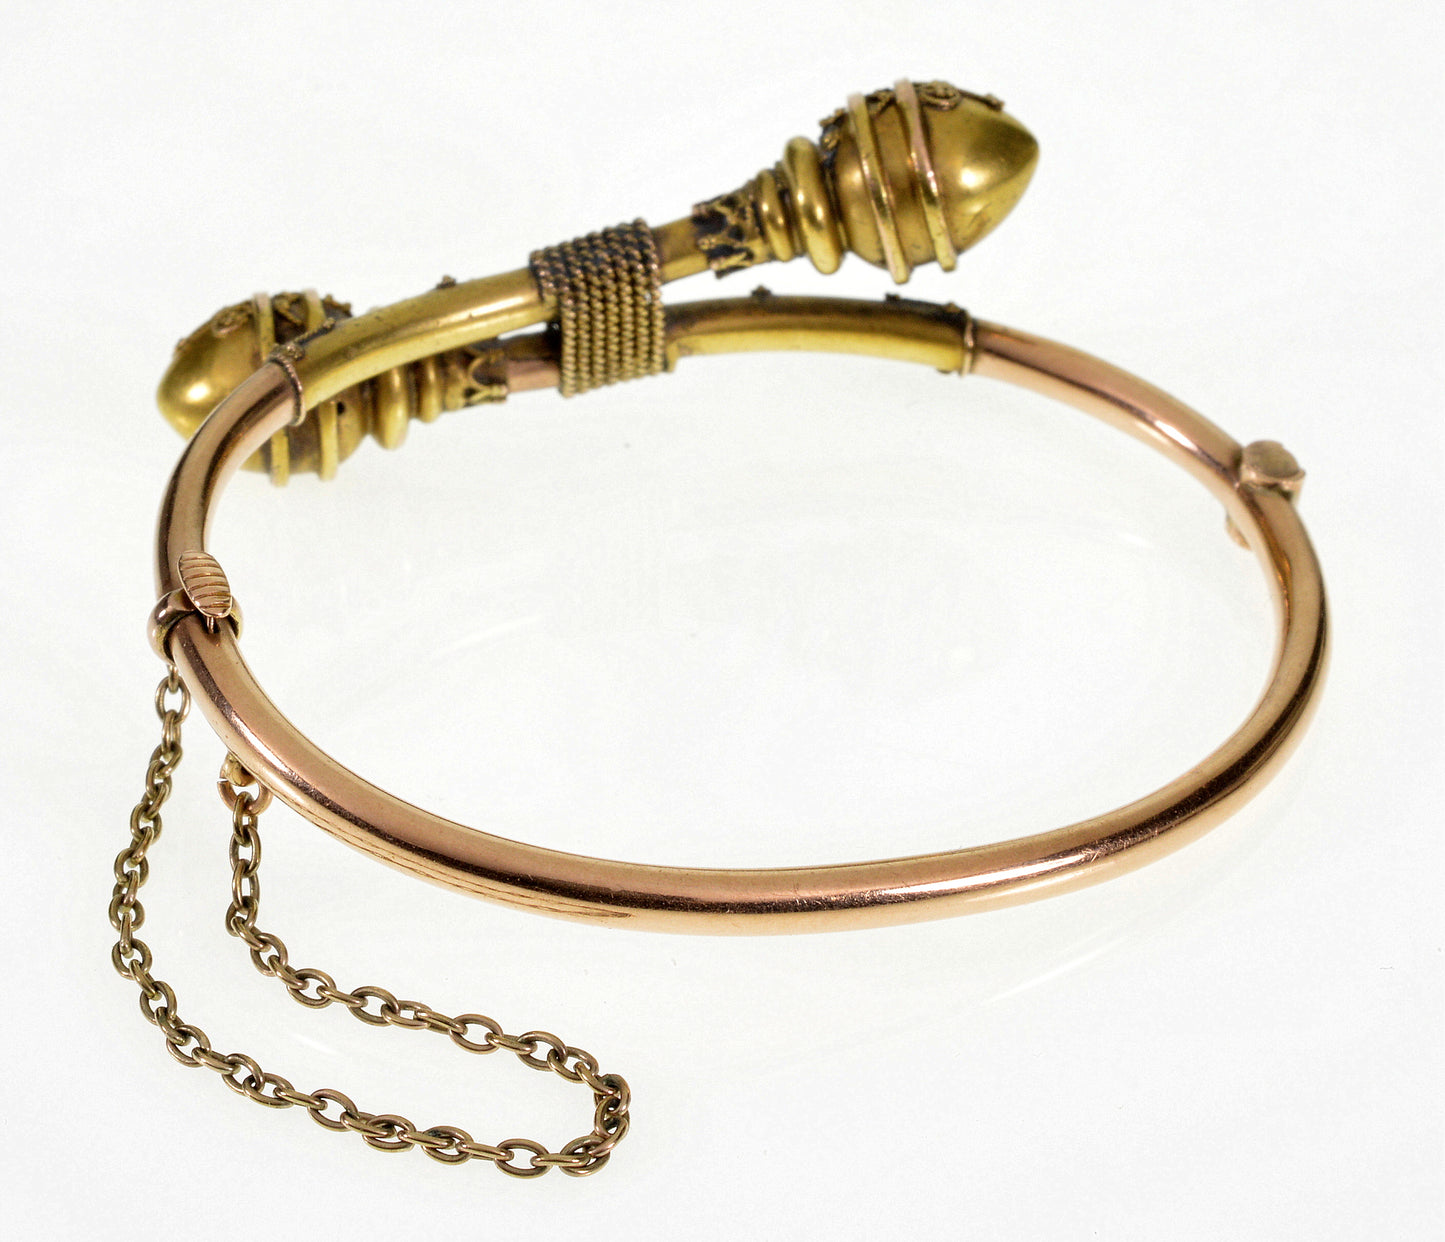 Antique Victorian Etruscan Revival 18K Gold Bypass Bracelet 5 1/2" C.1870